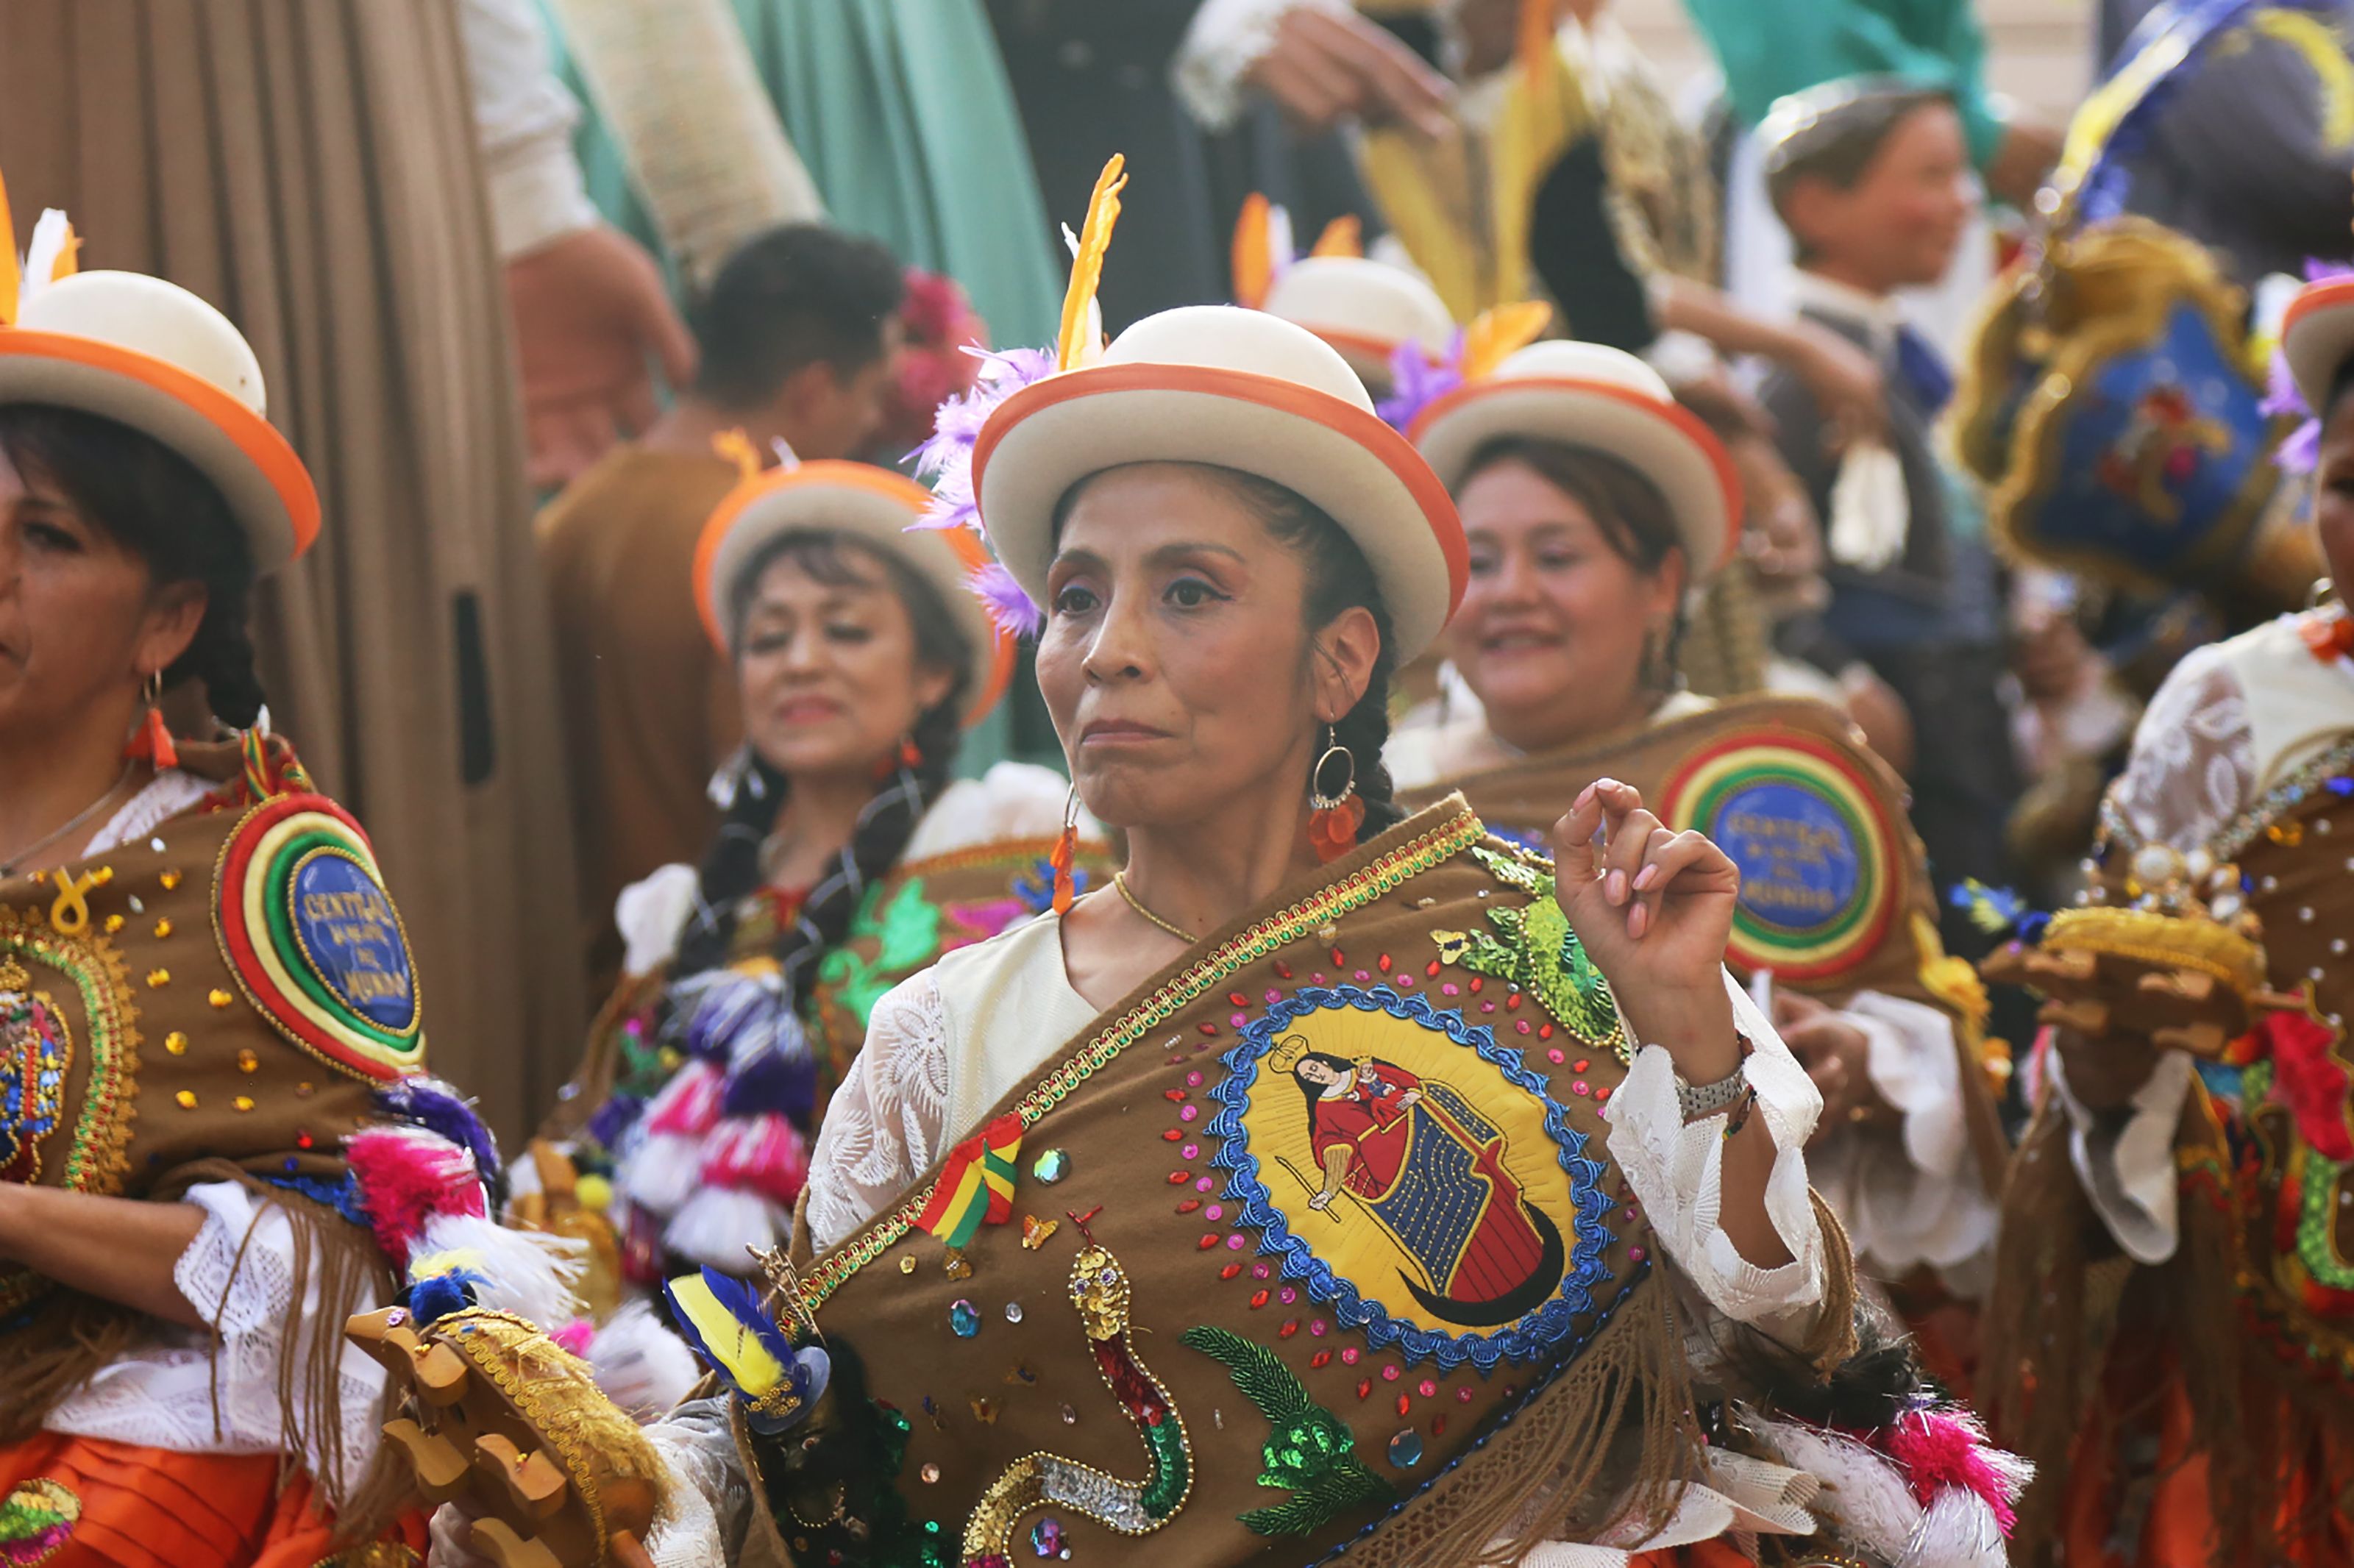 Rua de balls tradicionals de Bolívia a Sant Cugat. FOTO: Anna Bassa